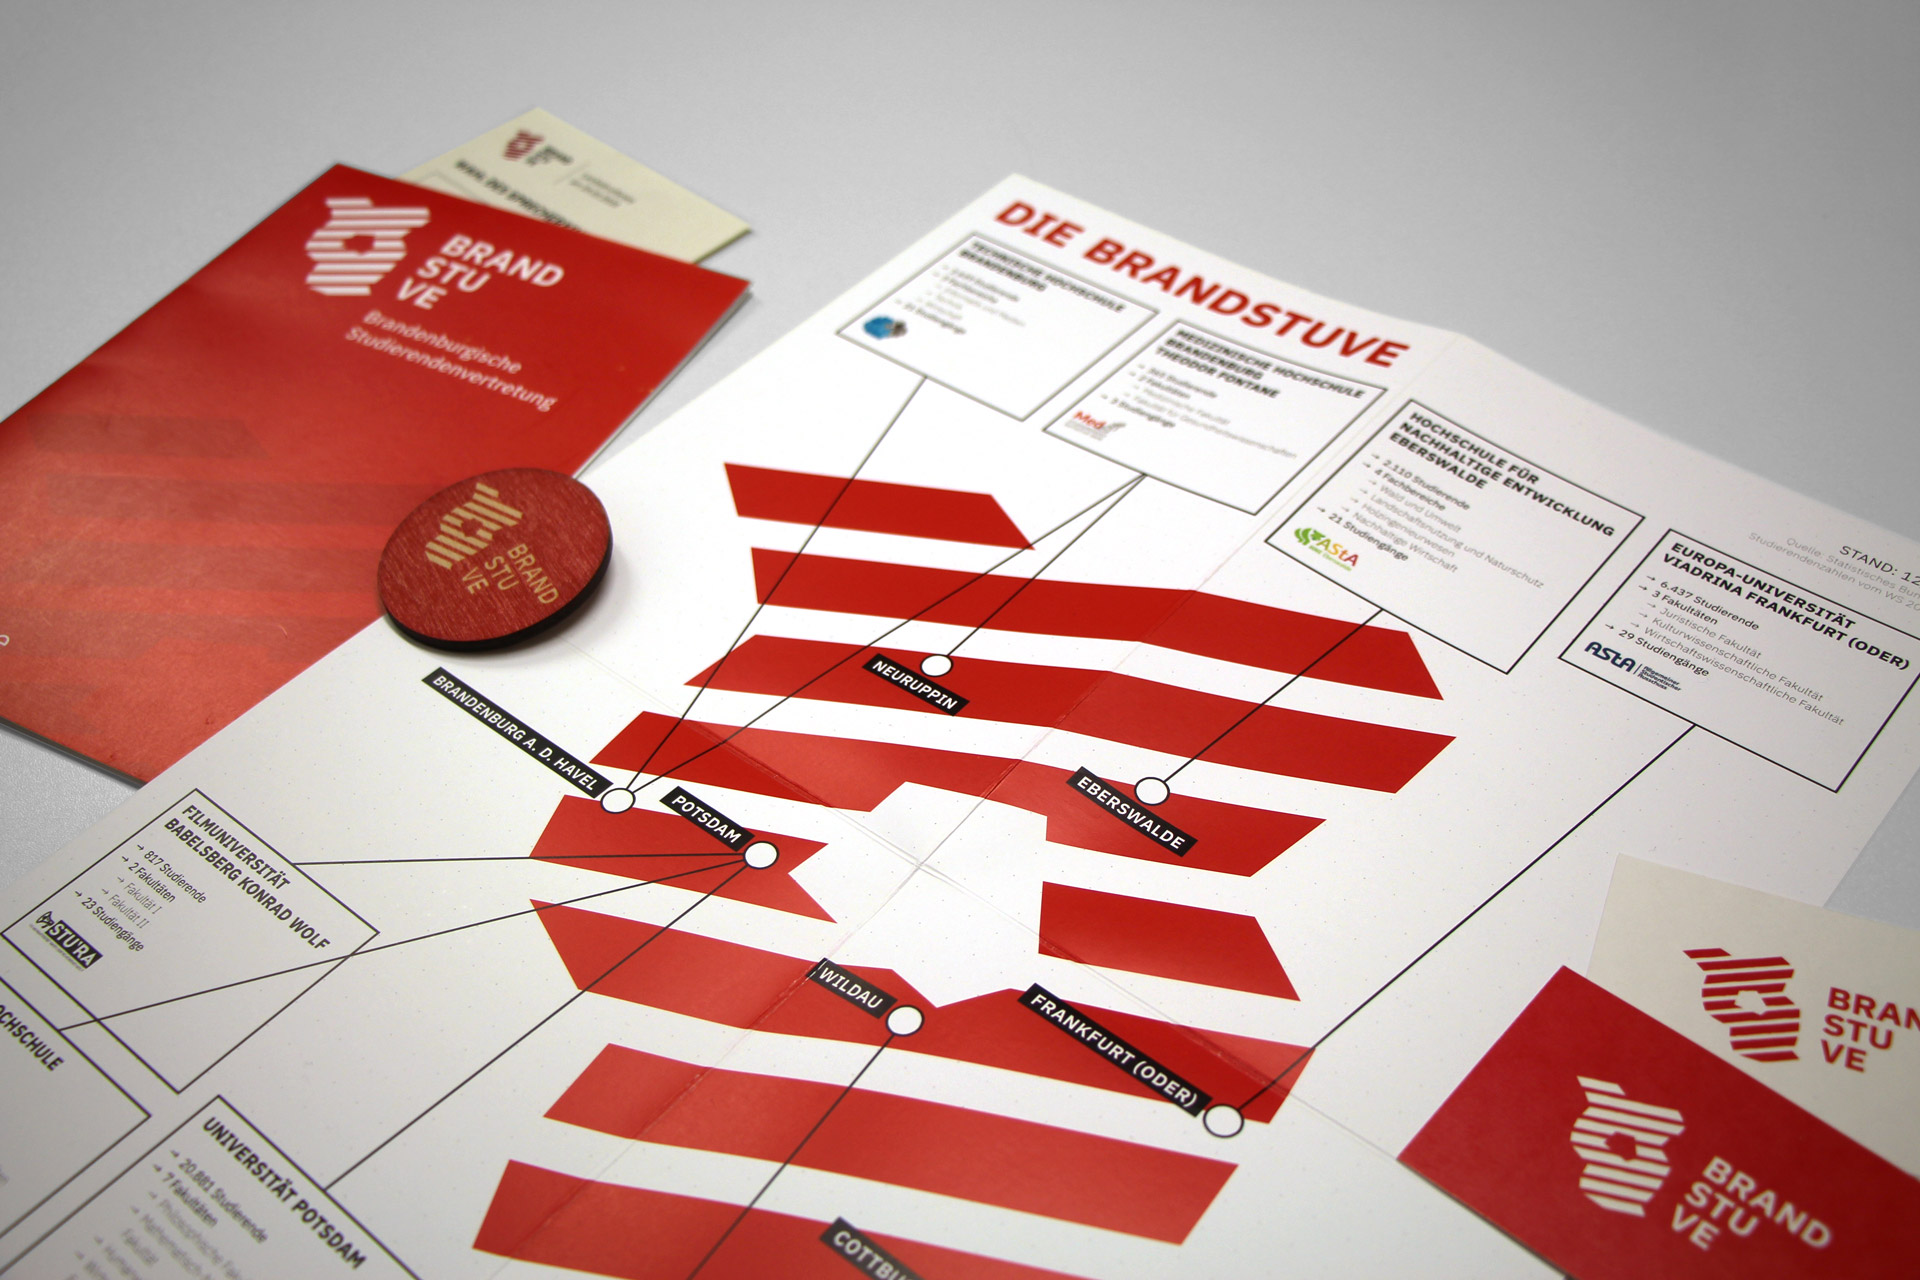 Ausgeklappter Flyer mit einer Übersicht der brandenburgischen Hochschulen, daneben VIsitenkarten mit dem BRANDSTUVE-Logo, ein Flyer, ein Pin und ein Wahlzettel.